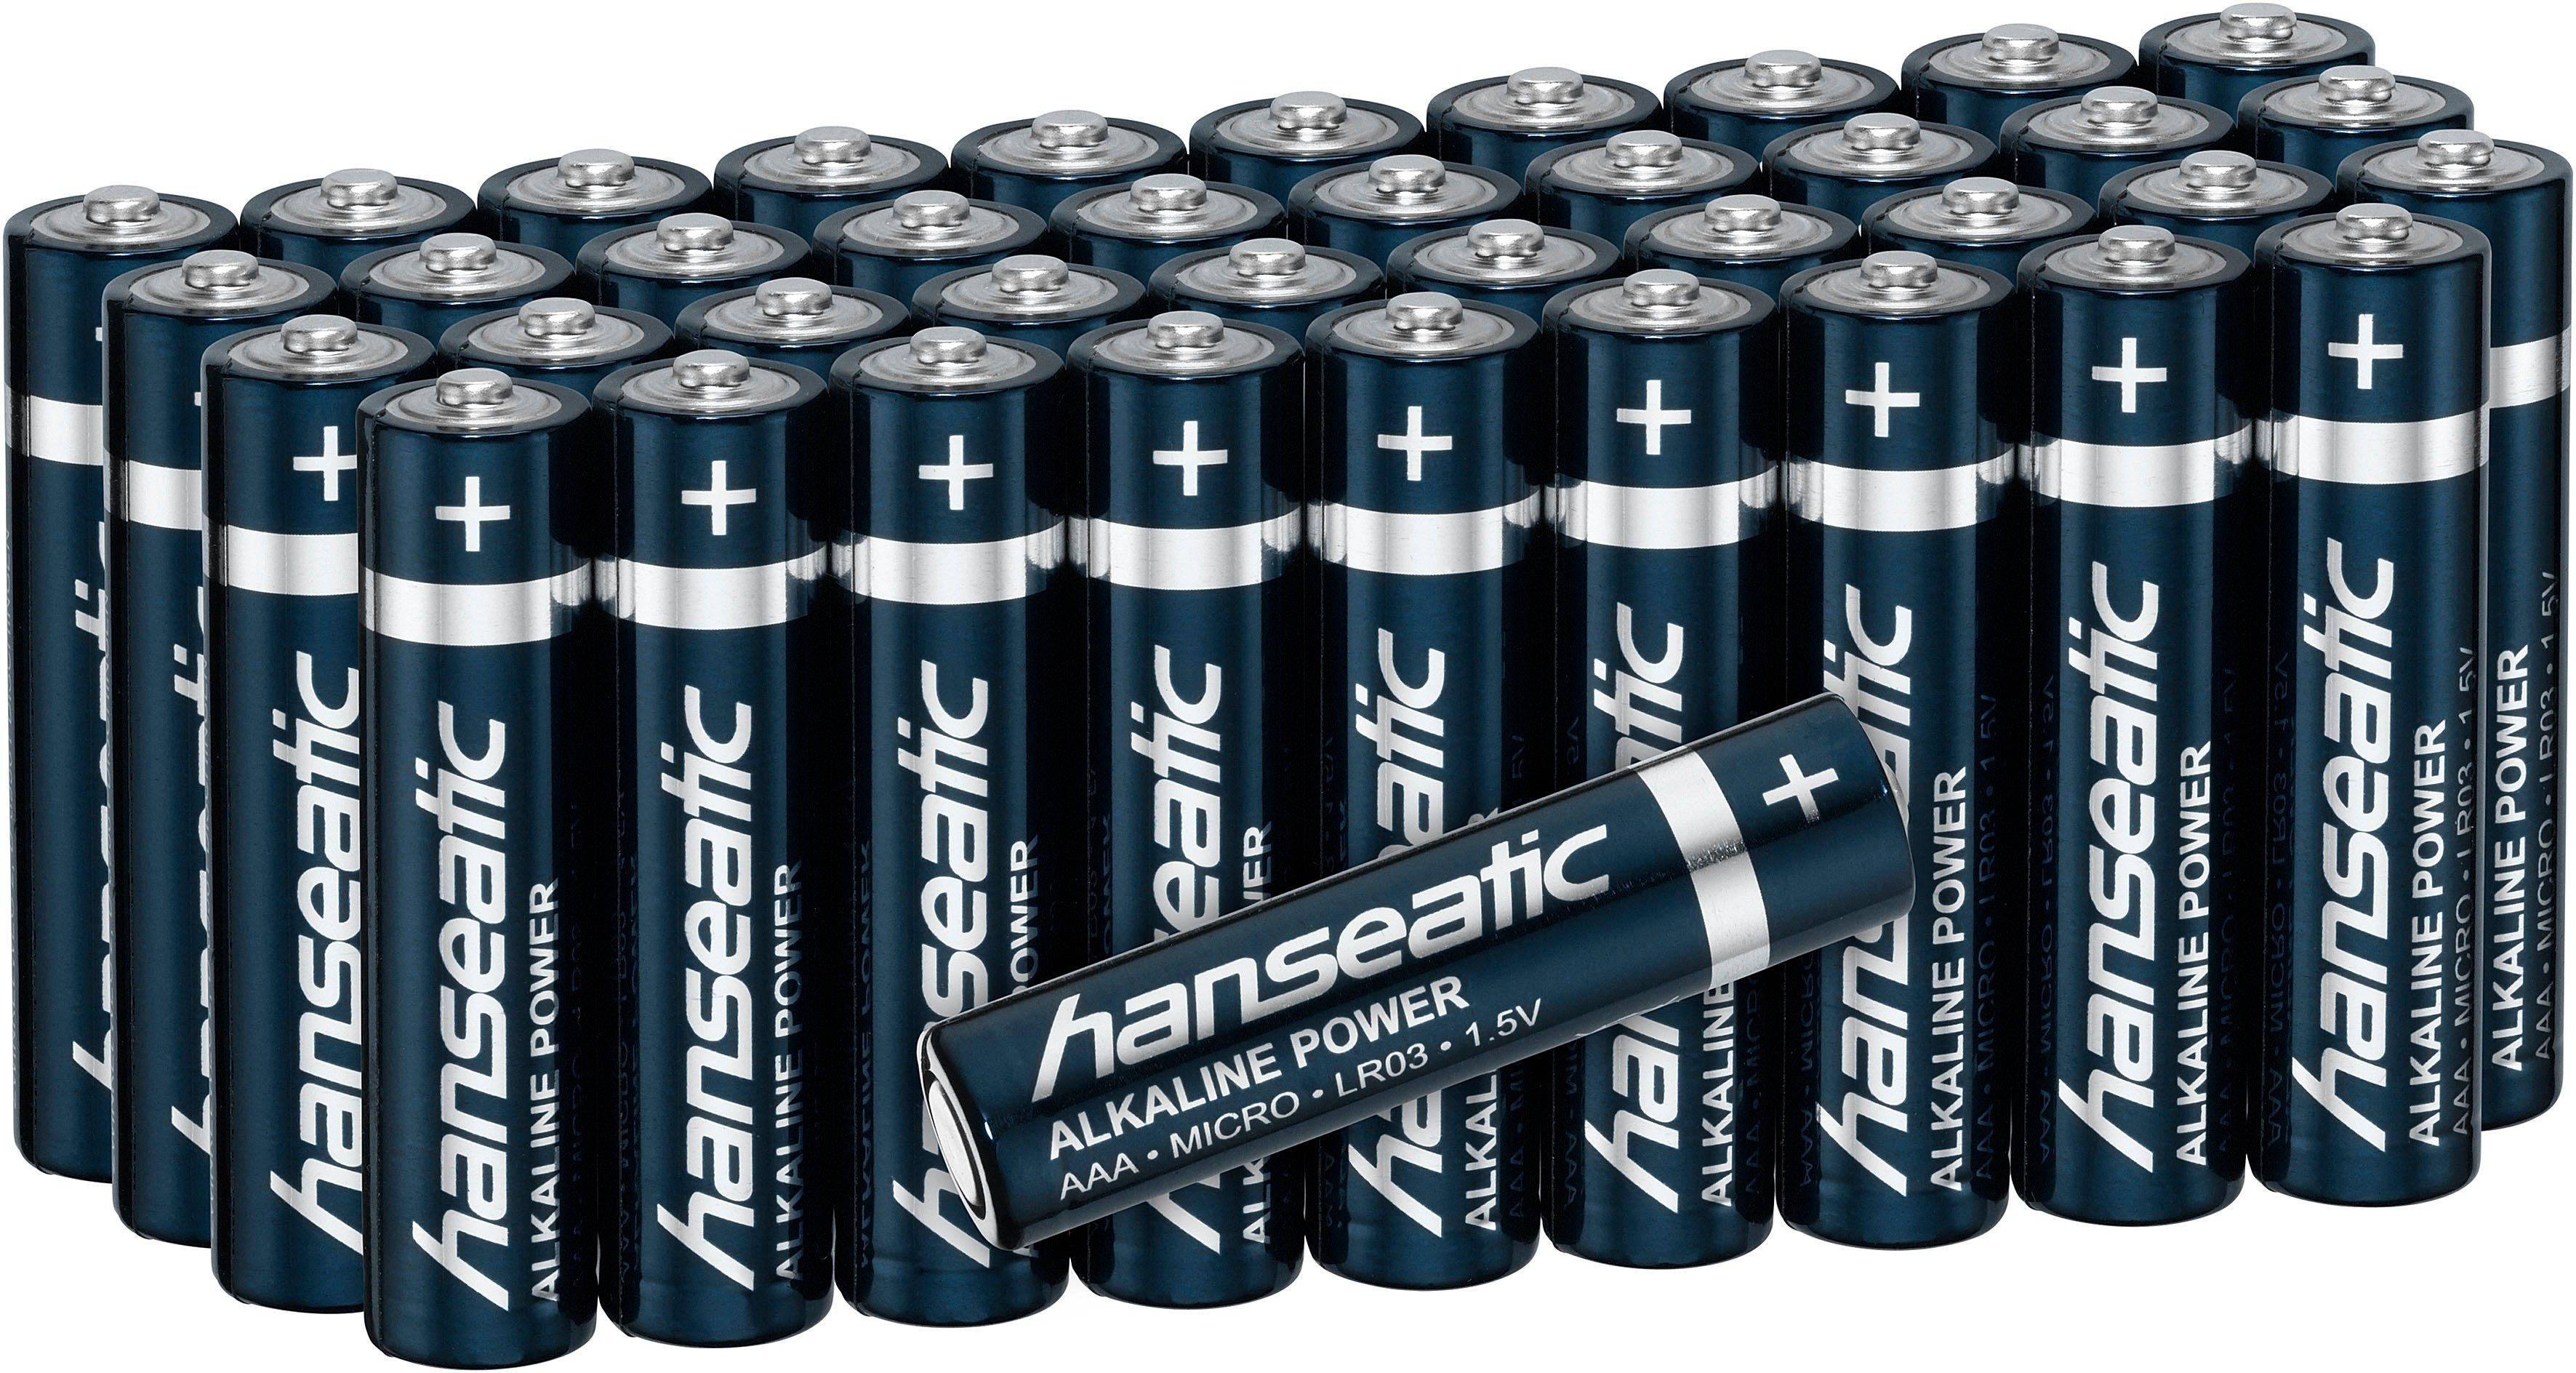 AAA St), Power, Micro Pack Alkaline Lagerfähigkeit Jahren zu LR03 5 40er Batterie, Hanseatic (40 bis